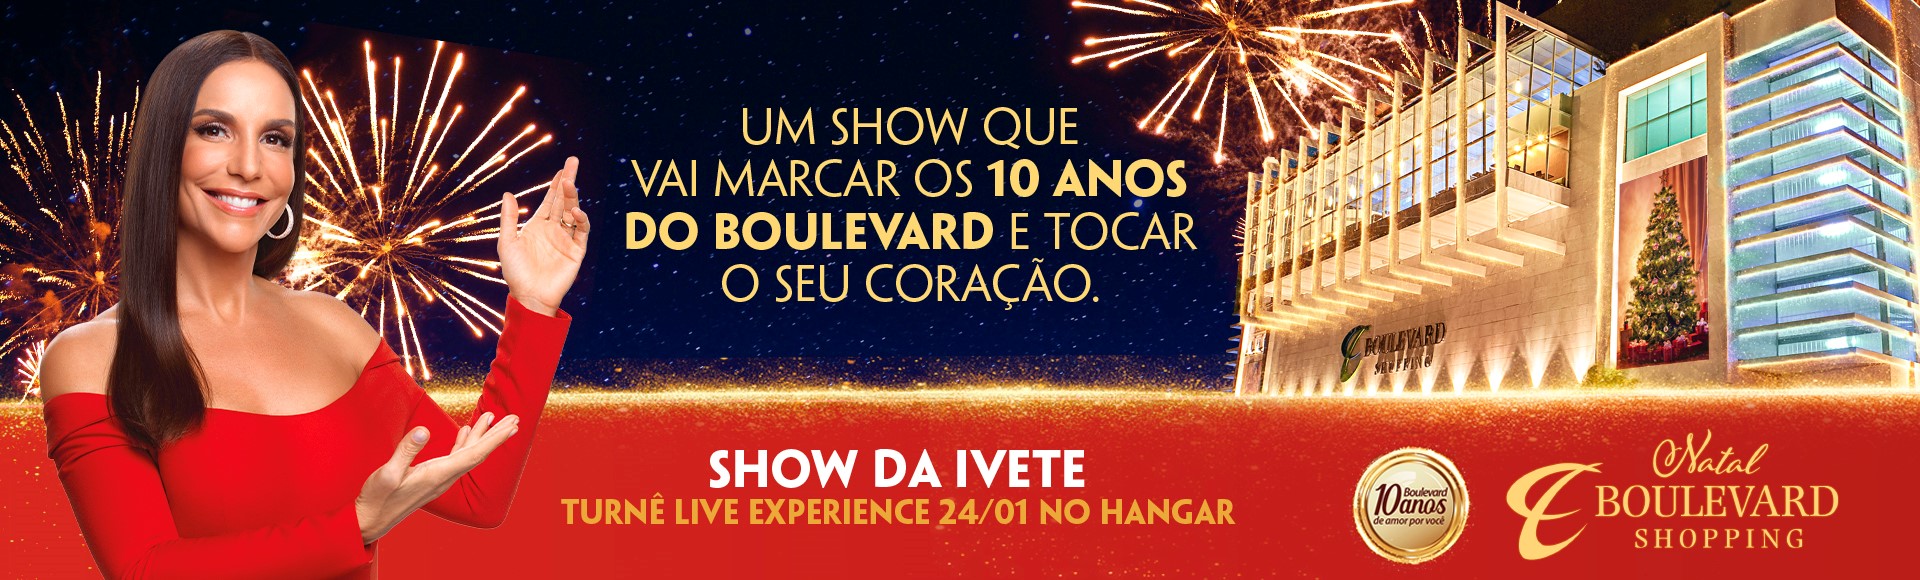 Campanha da Ideia 3 traz Ivete Sangalo em show exclusivo para clientes  Boulevard Belém – Ideia 3